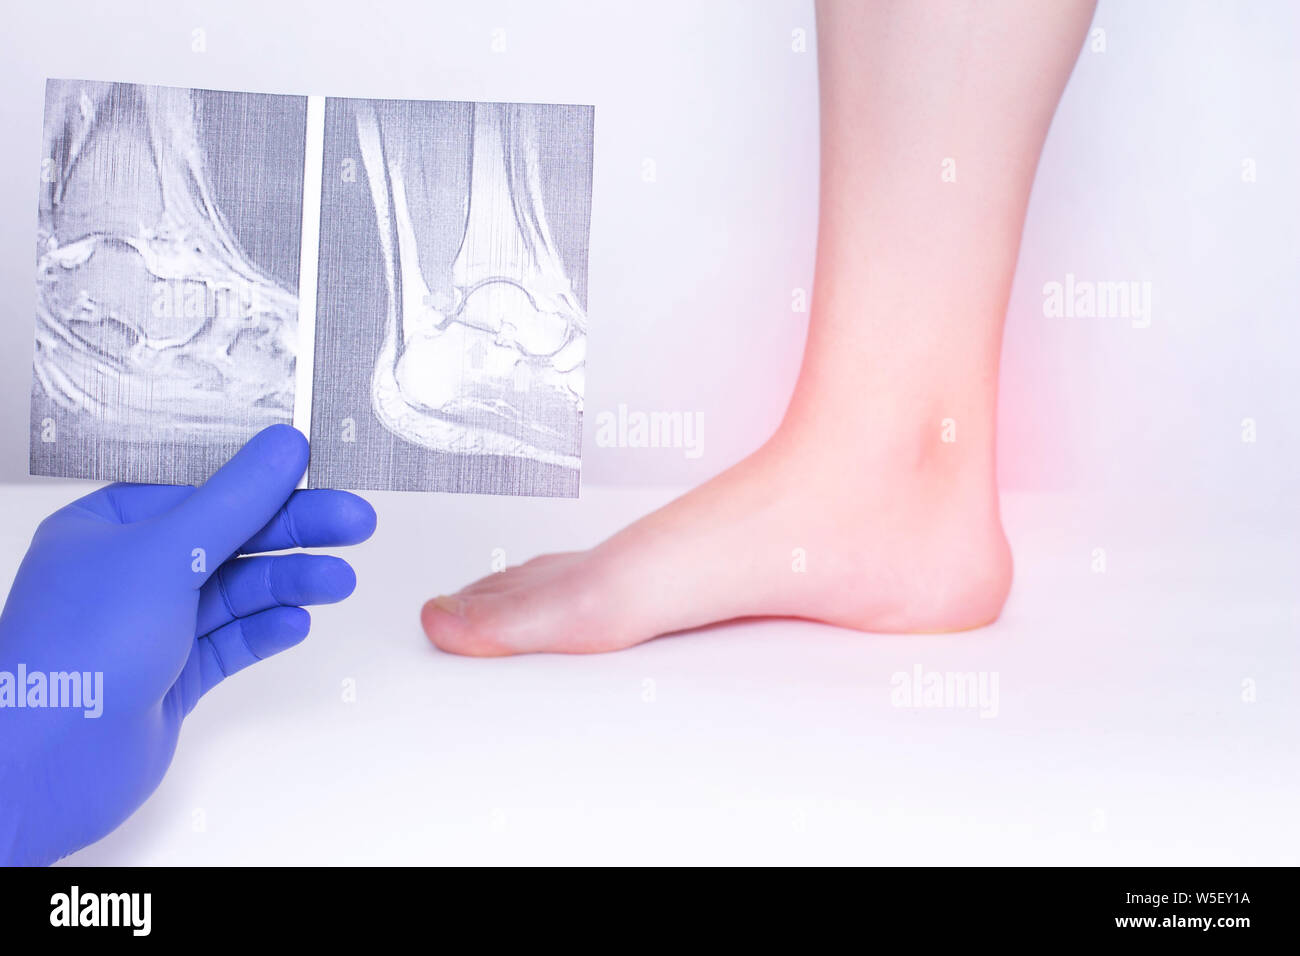 Der Arzt führt eine ärztliche Untersuchung des Fußgelenks mit Hilfe eines x-ray die Krankheit Arthrose, Diagnose zu erkennen, Bandapparat Stockfoto